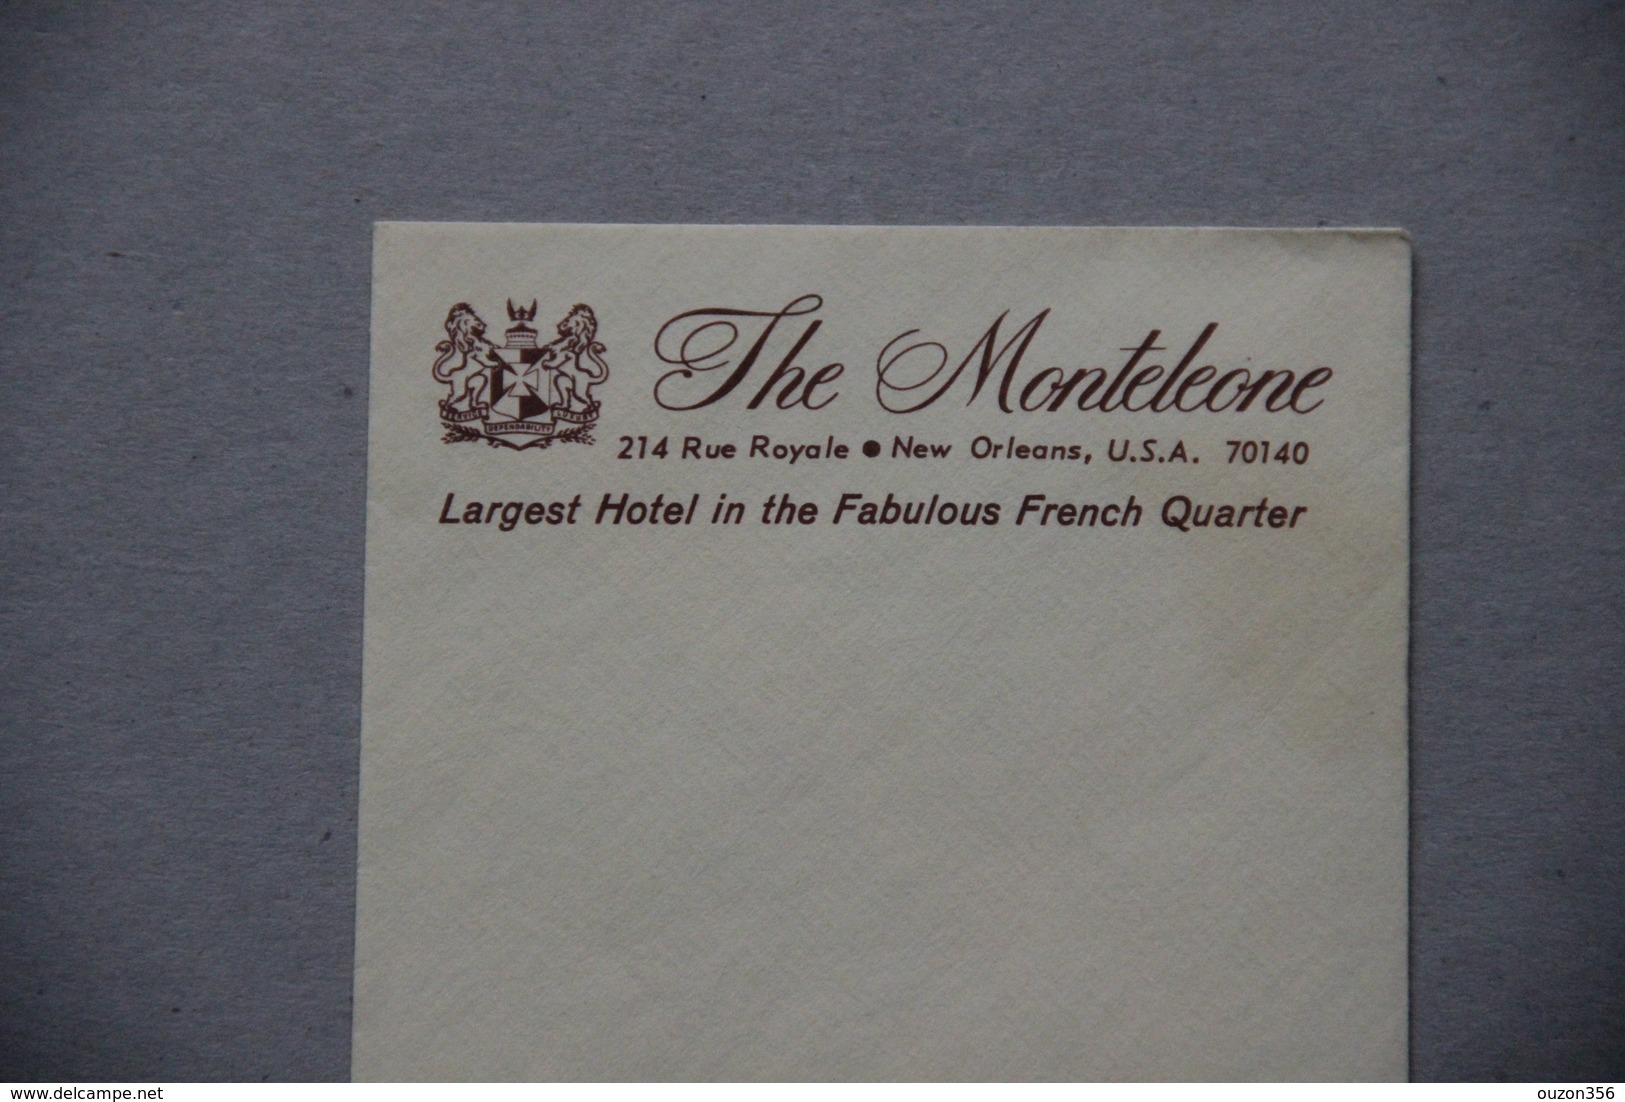 Enveloppe Vierge, Hôtel The Monteleone, New Orleans (Louisiane, Etats-Unis, USA) - USA